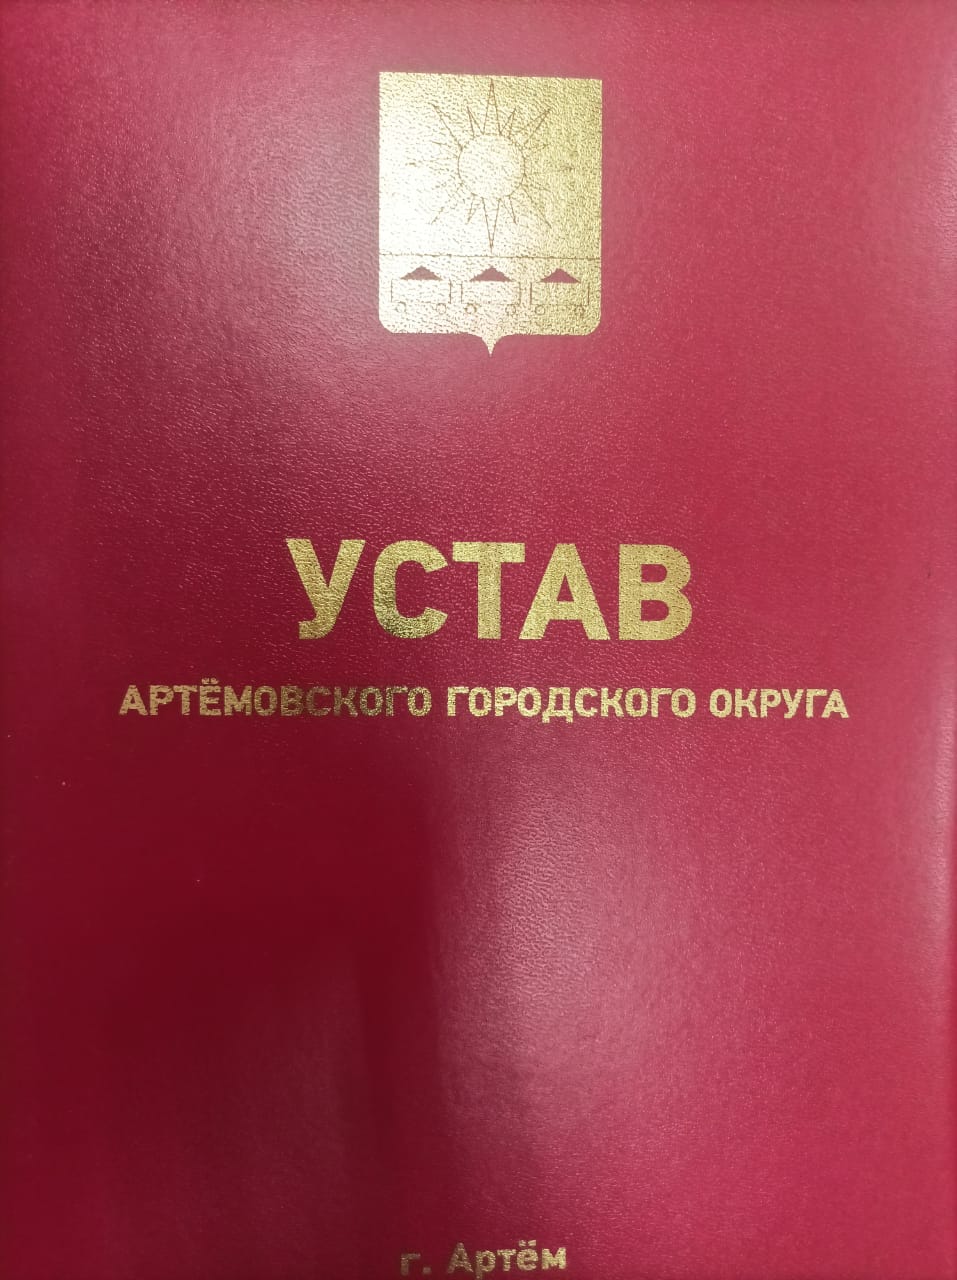 Изменения в городской Устав зарегистрированы в Минюсте РФ